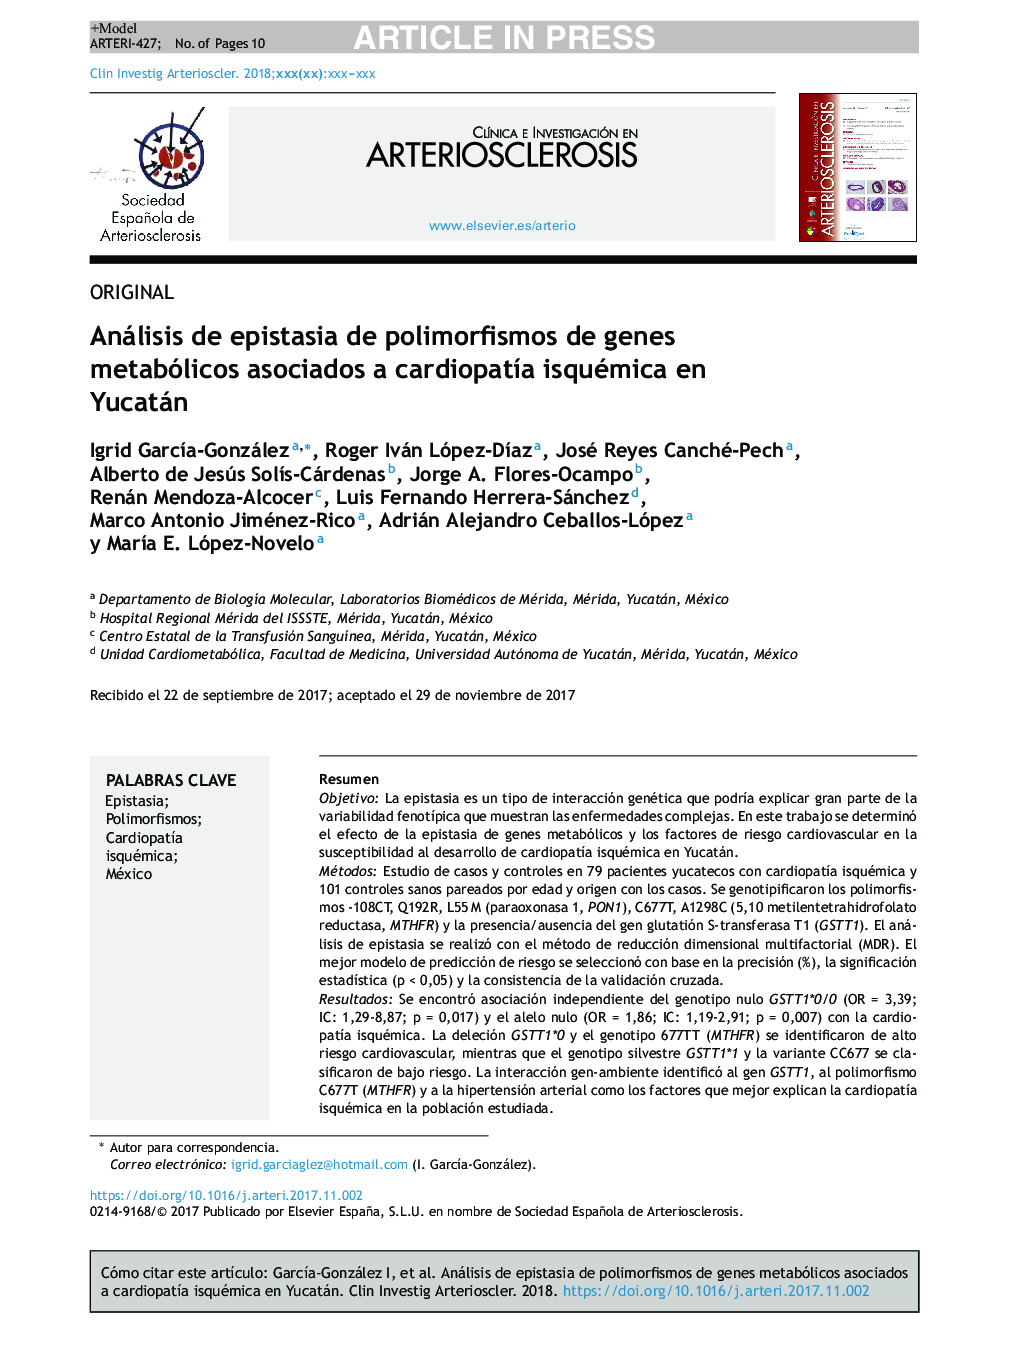 Análisis de epistasia de polimorfismos de genes metabólicos asociados a cardiopatÃ­a isquémica en Yucatán